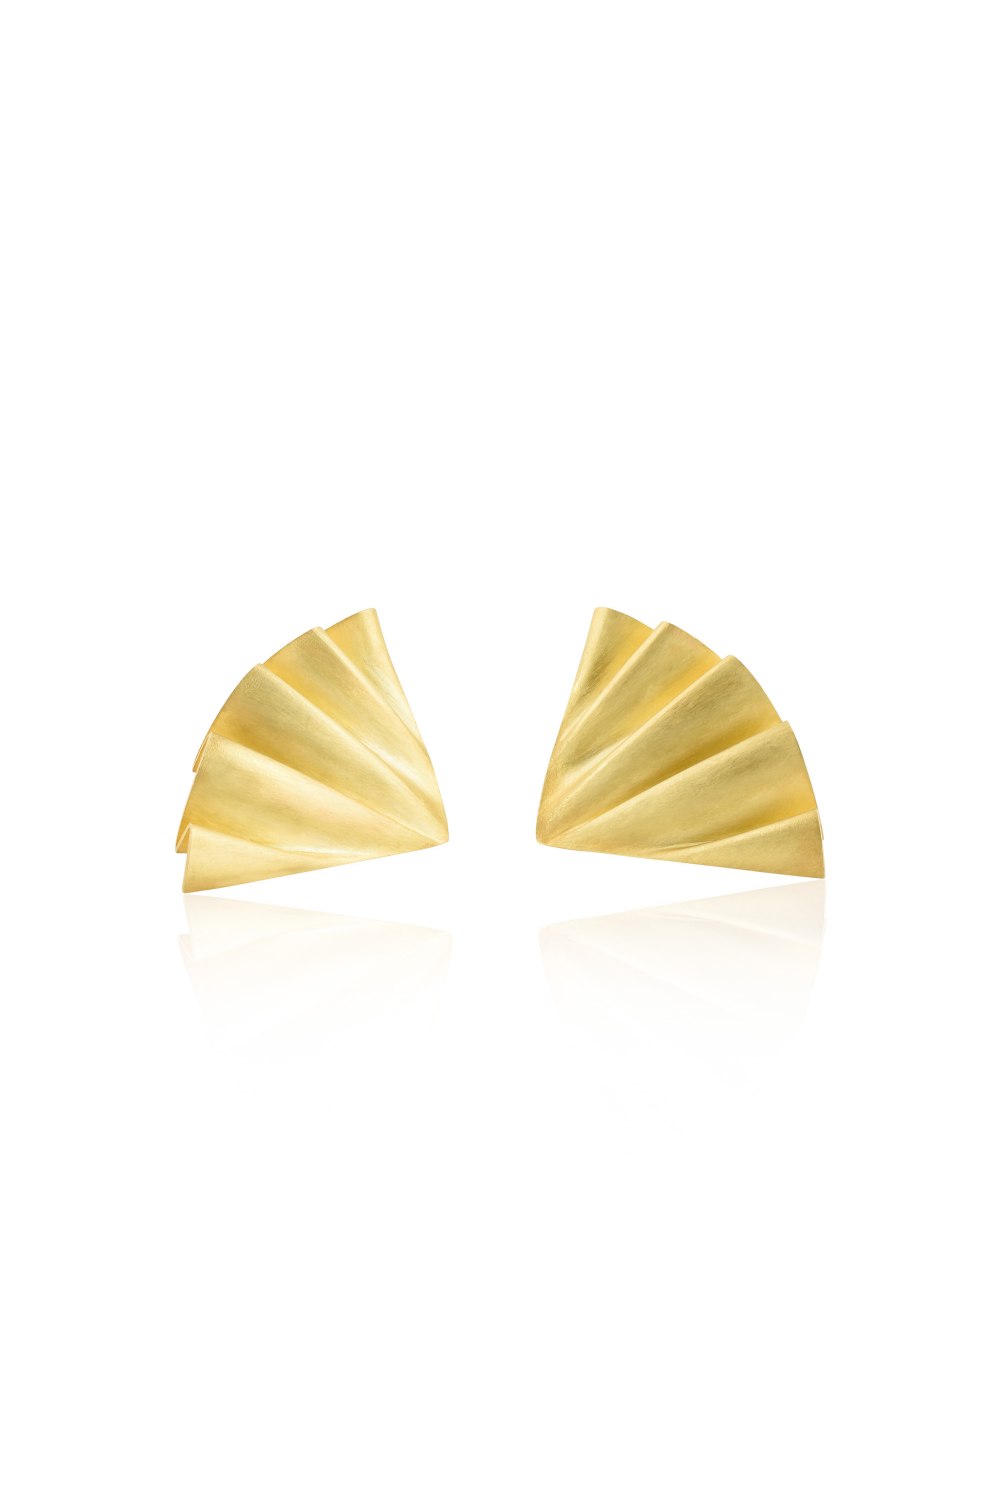 Plisse Gold Matte Earrings